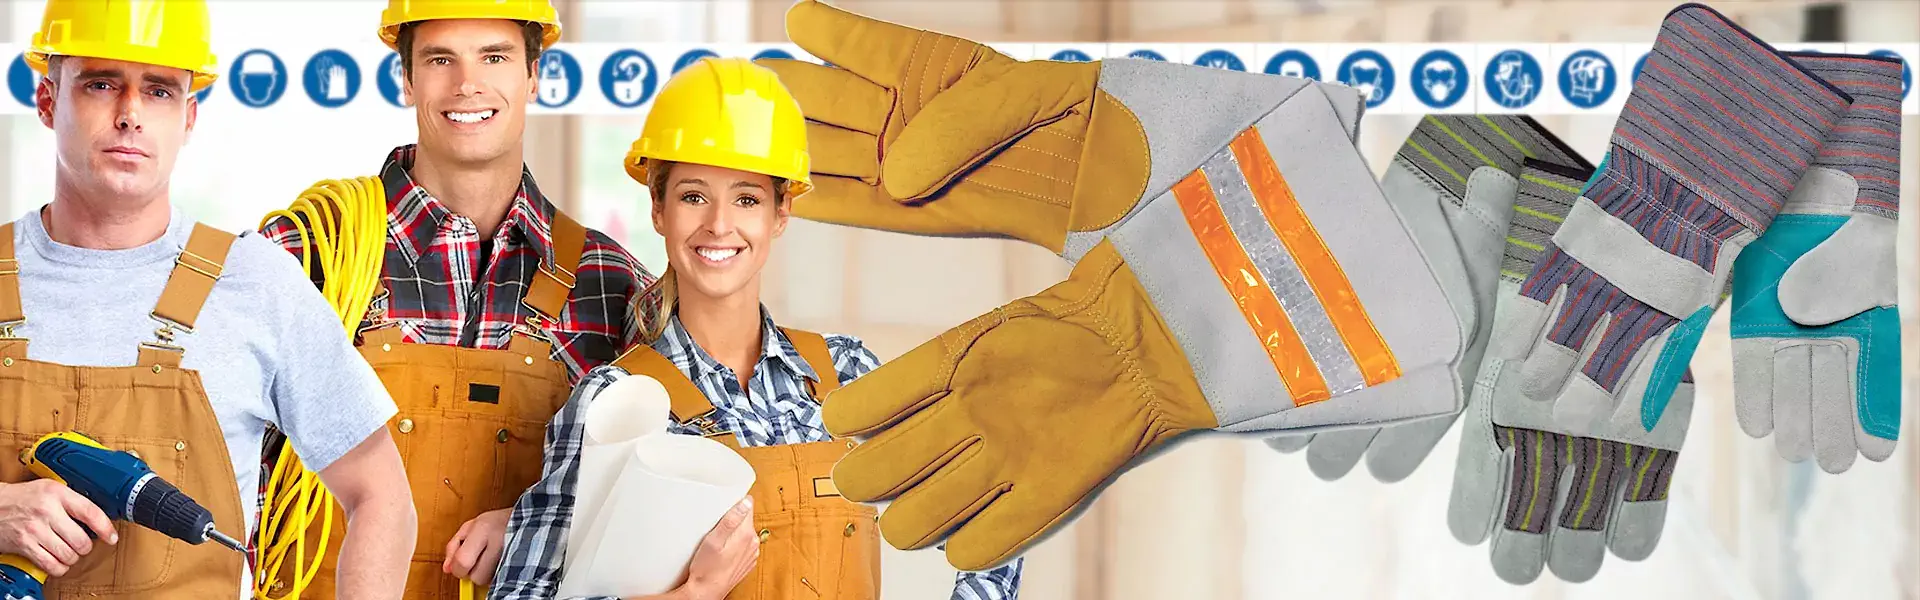 Výroba rukavíc | Ochranné pomôcky